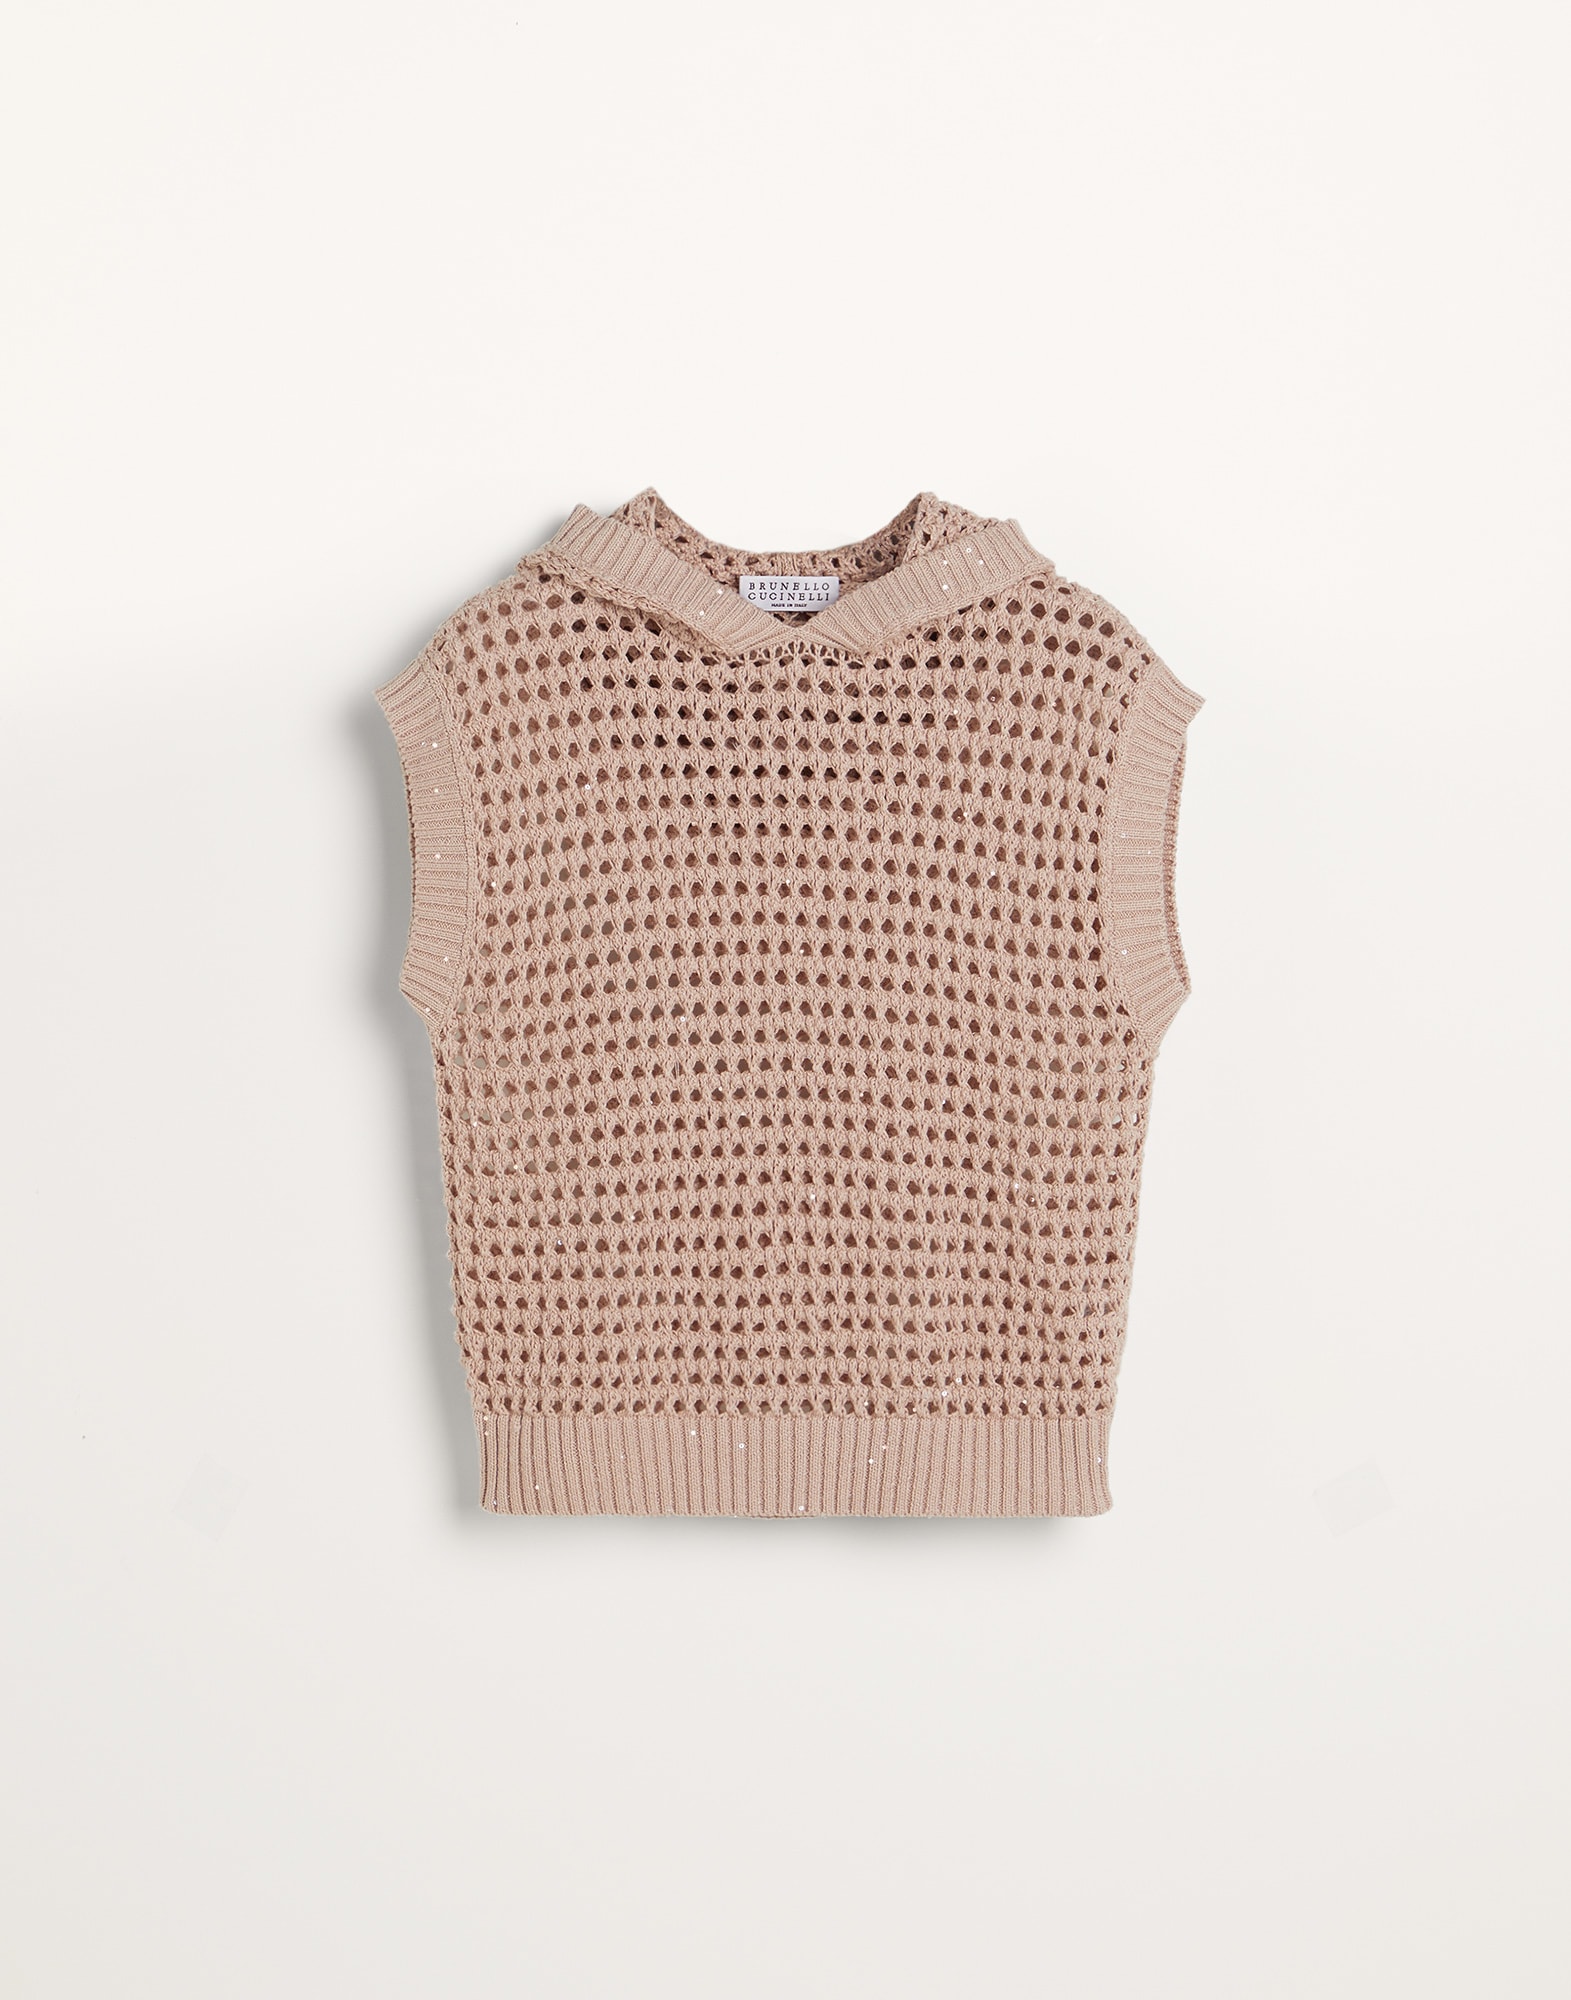 Dazzling Net sweater